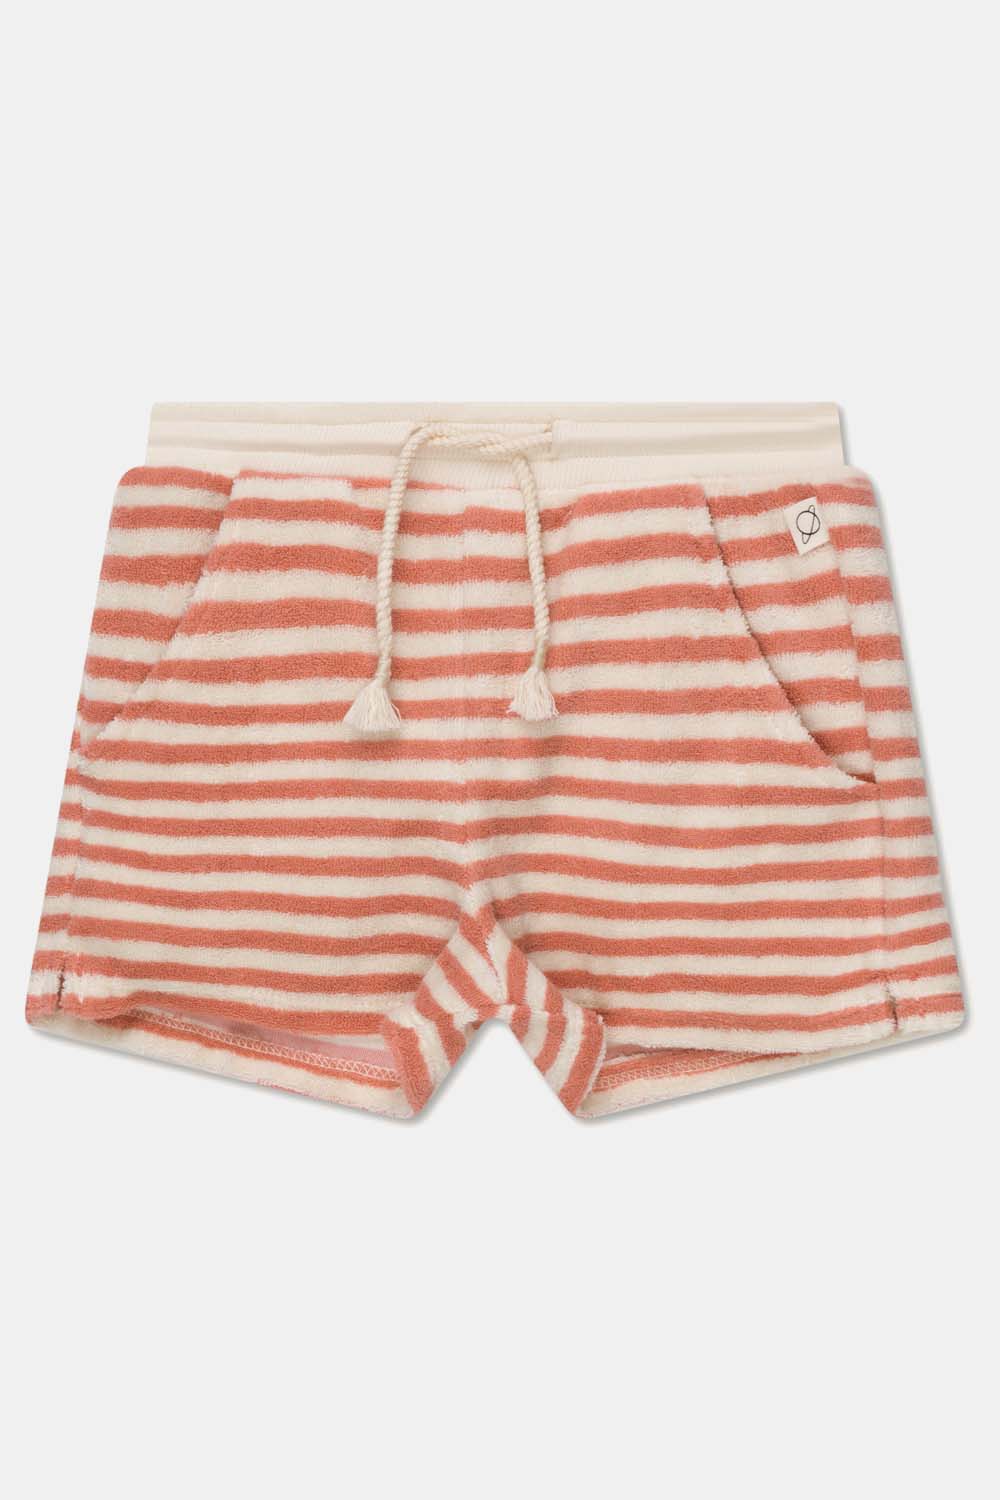 My Little Cozmo Kids Toweling Stripe Shorts